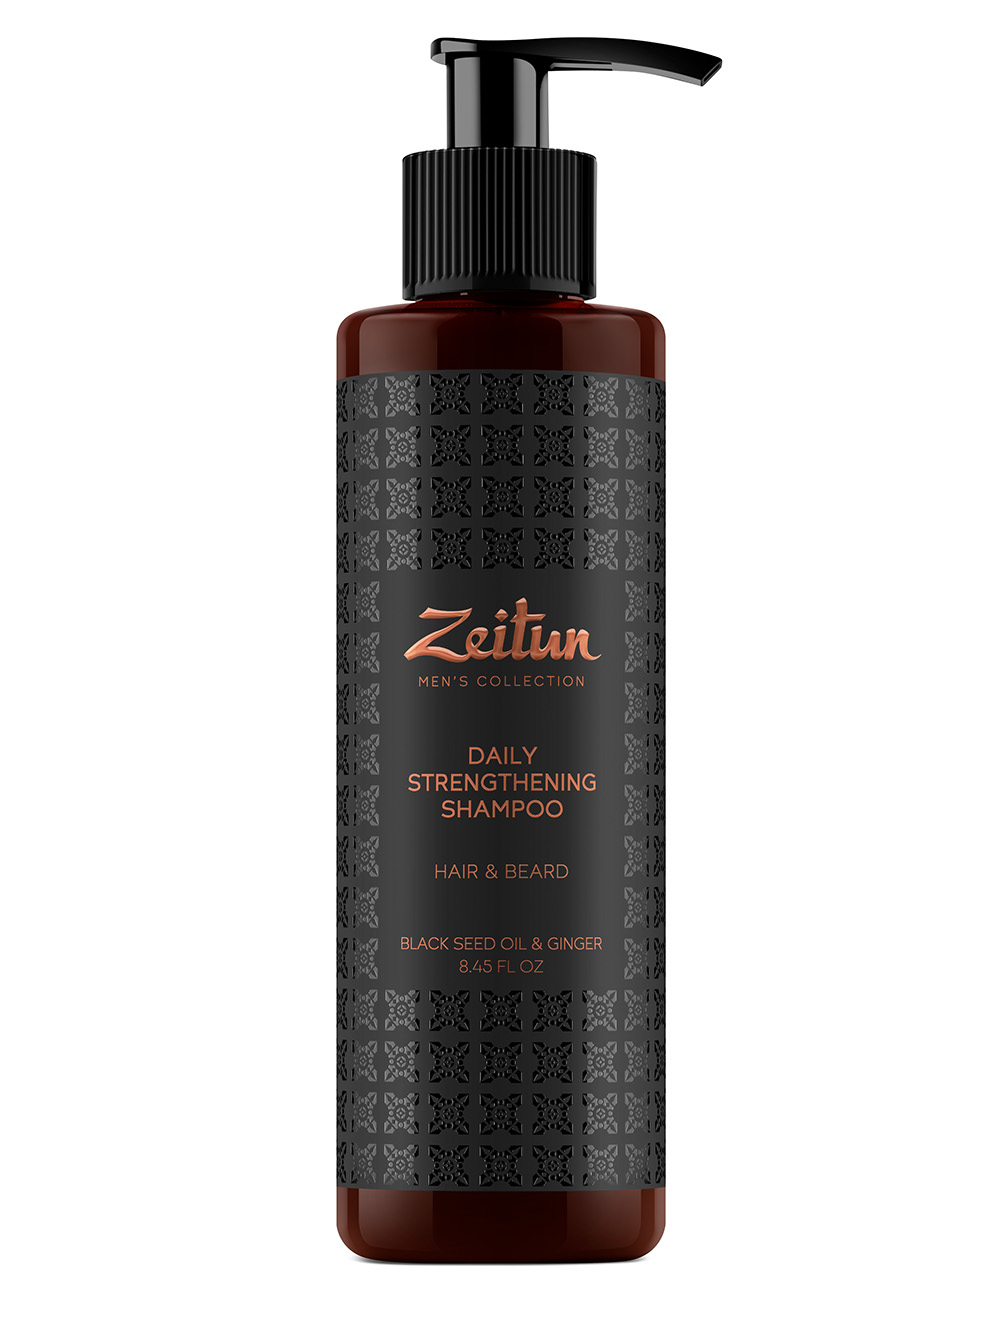 Zeitun Укрепляющий шампунь с имбирем и черным тмином для волос и бороды, 250 мл (Zeitun, Men's Collection) цена и фото